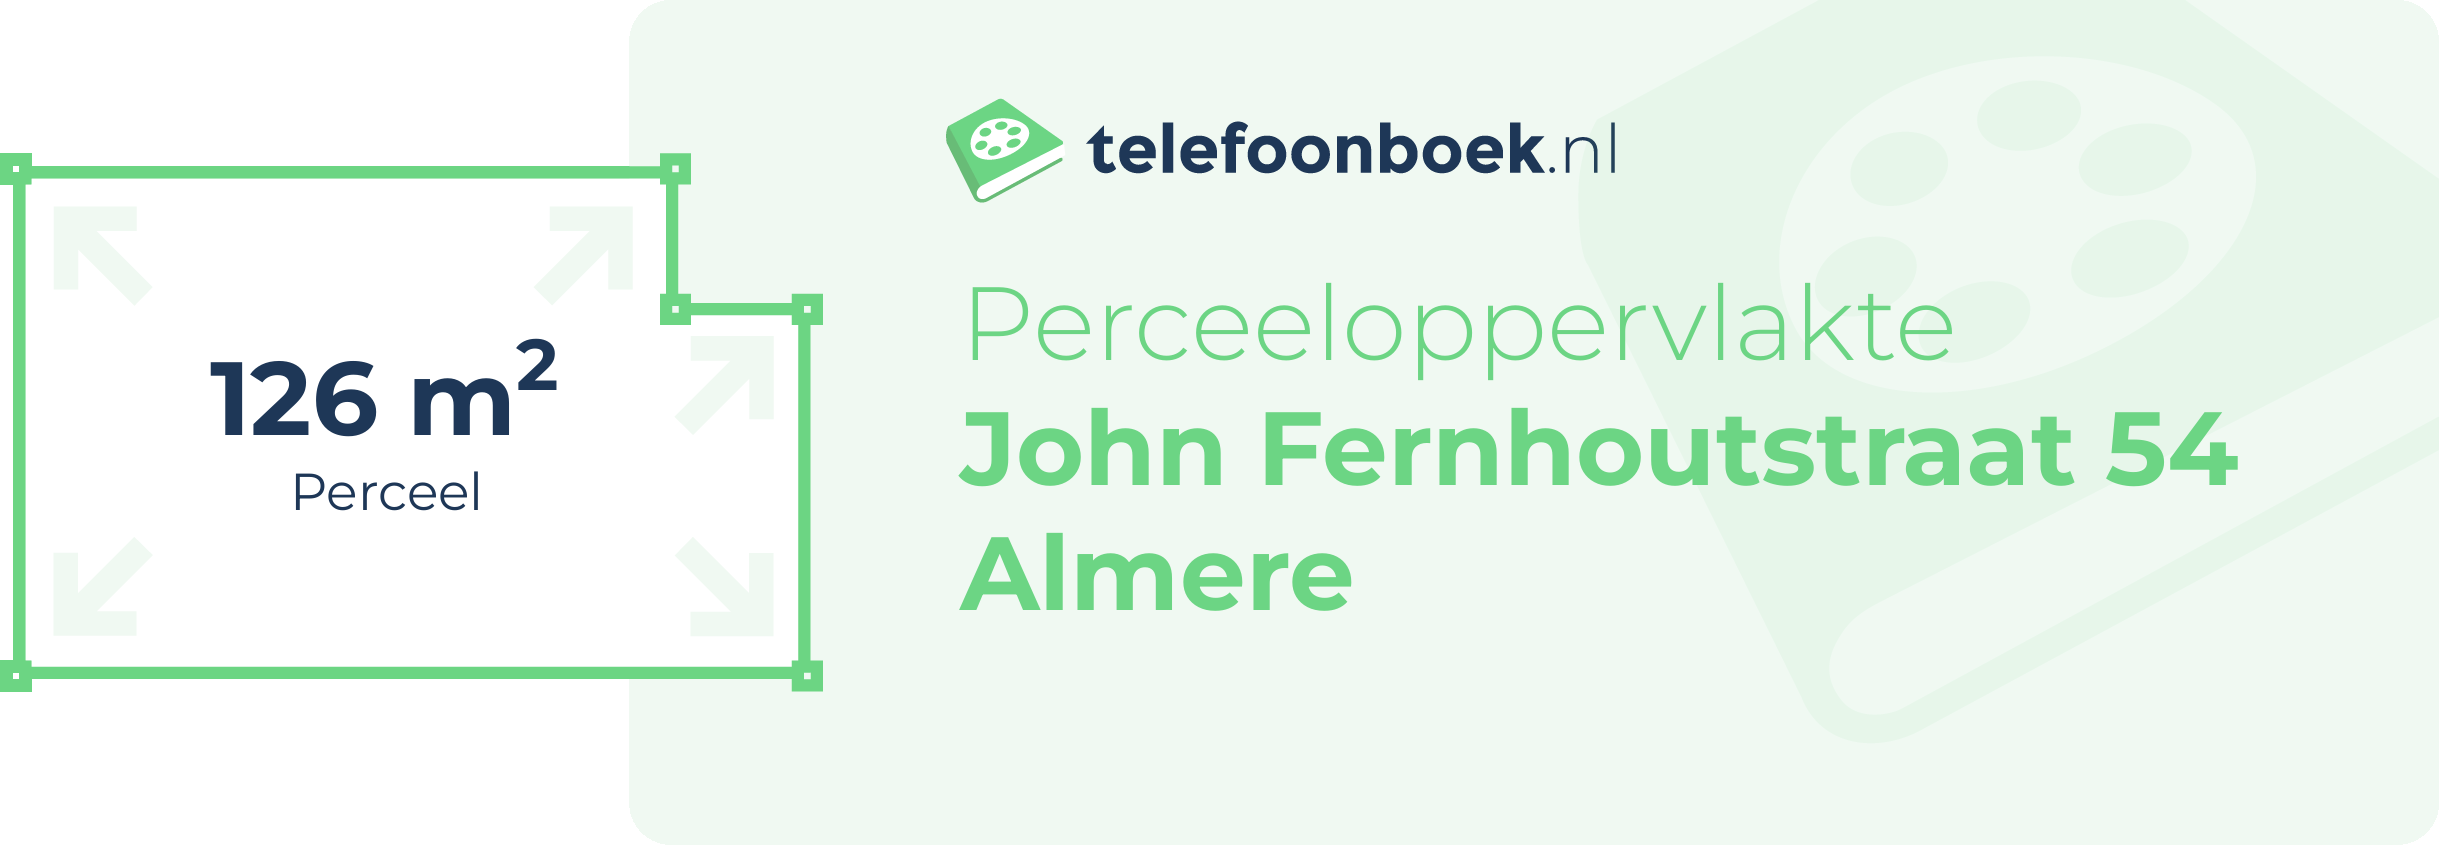 Perceeloppervlakte John Fernhoutstraat 54 Almere